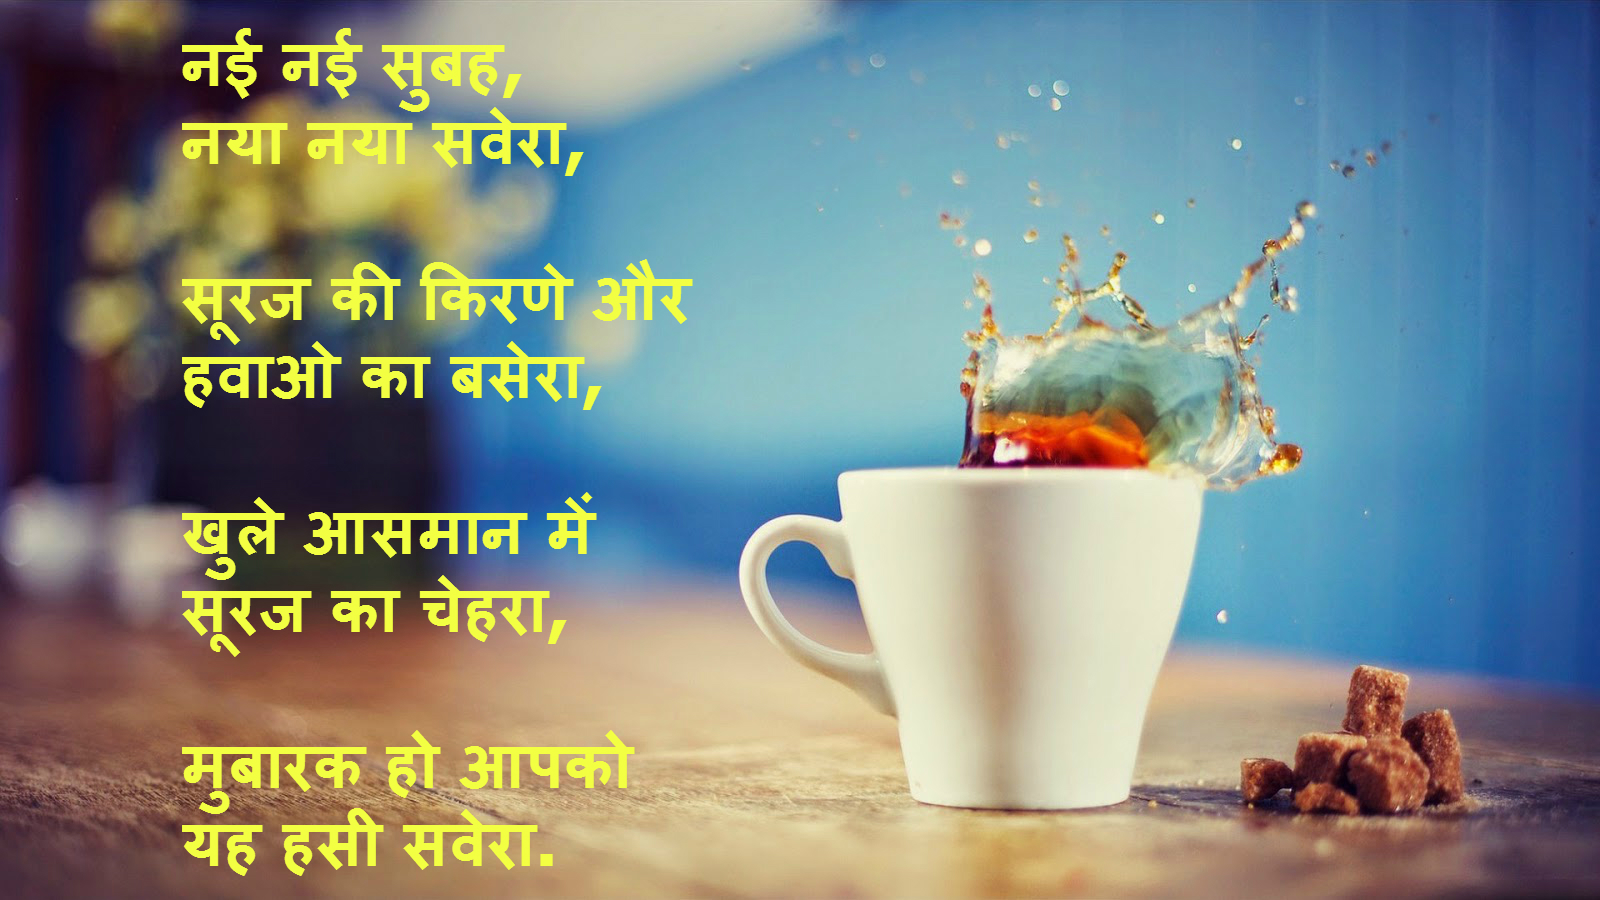 Good Morning Image Shayari In Hindi - Shayari Image Good Morning Download , HD Wallpaper & Backgrounds